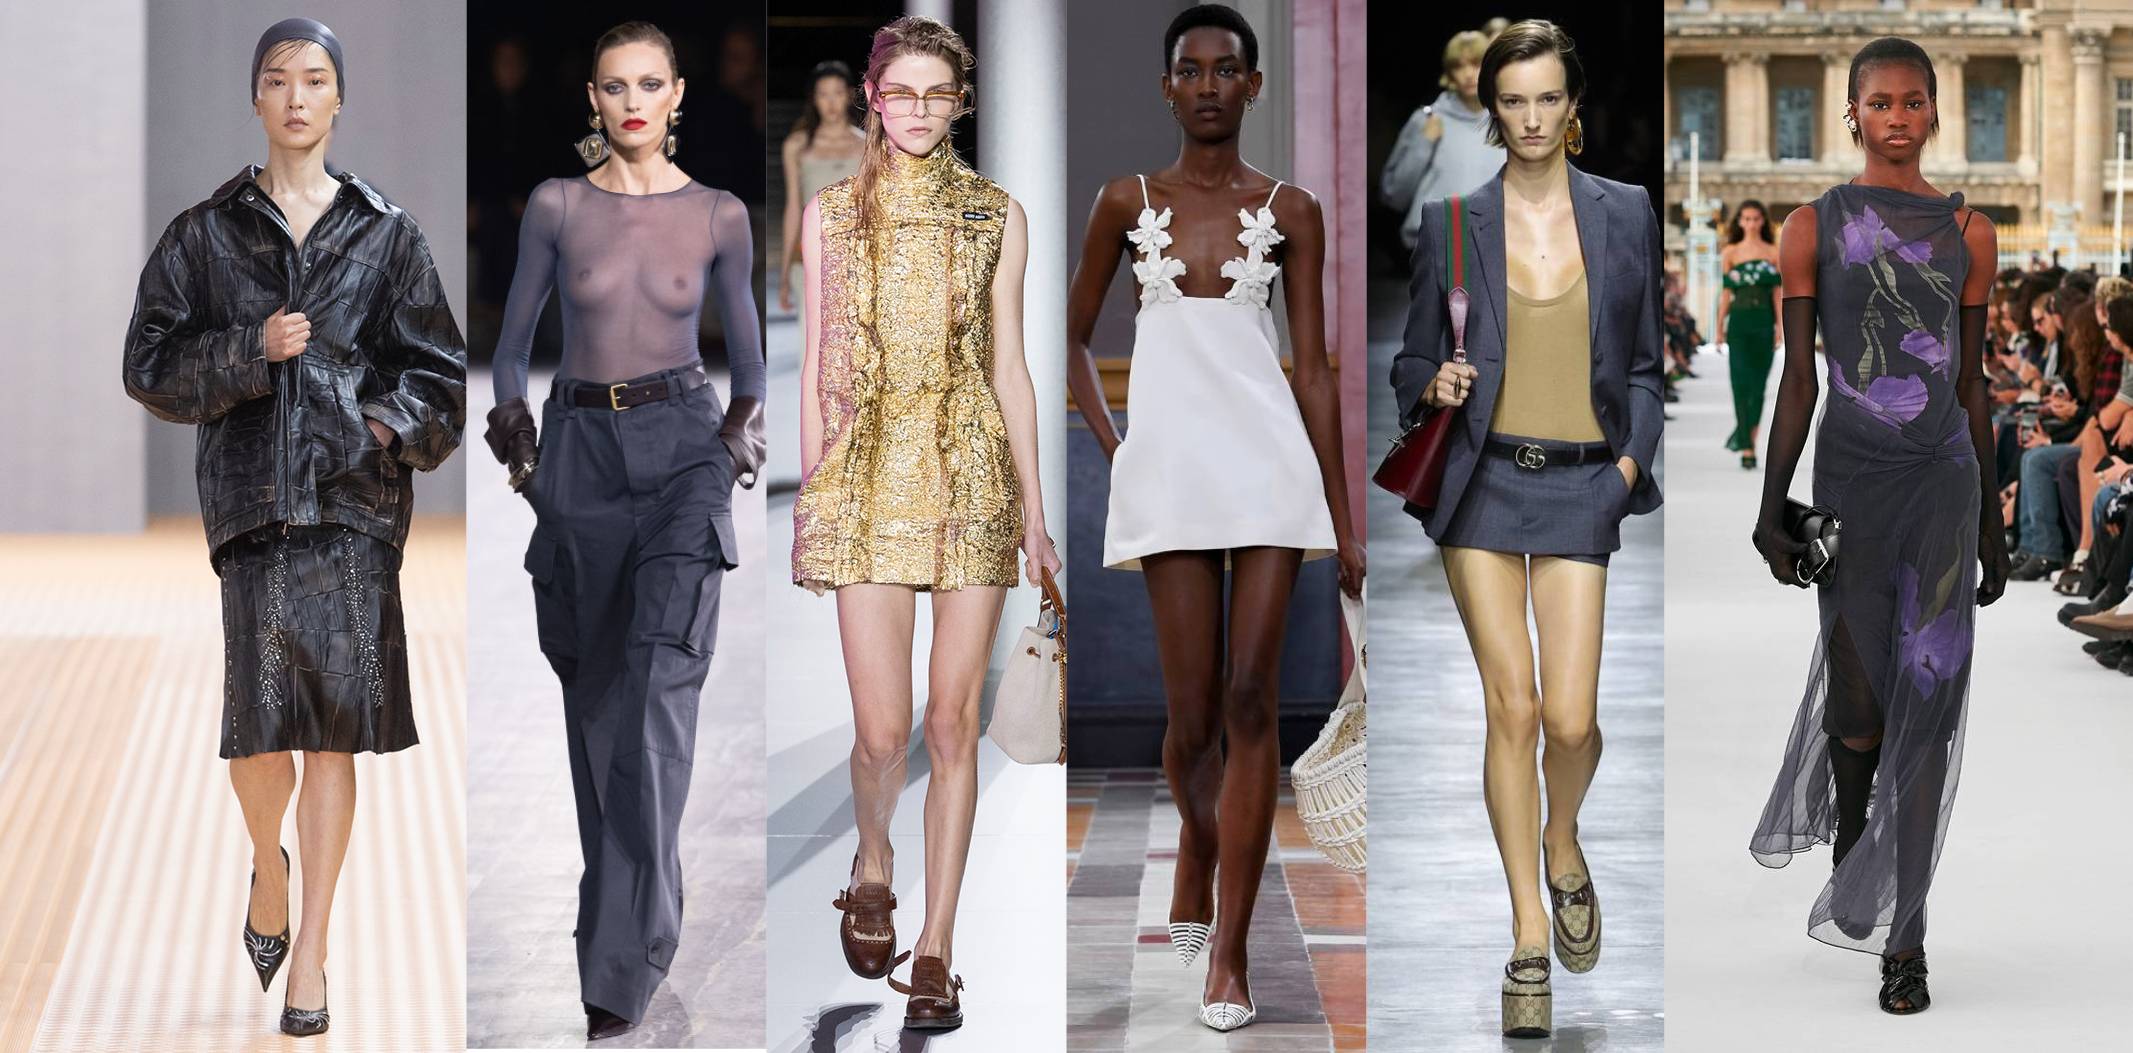 33 Leather pants women ideas in 2024